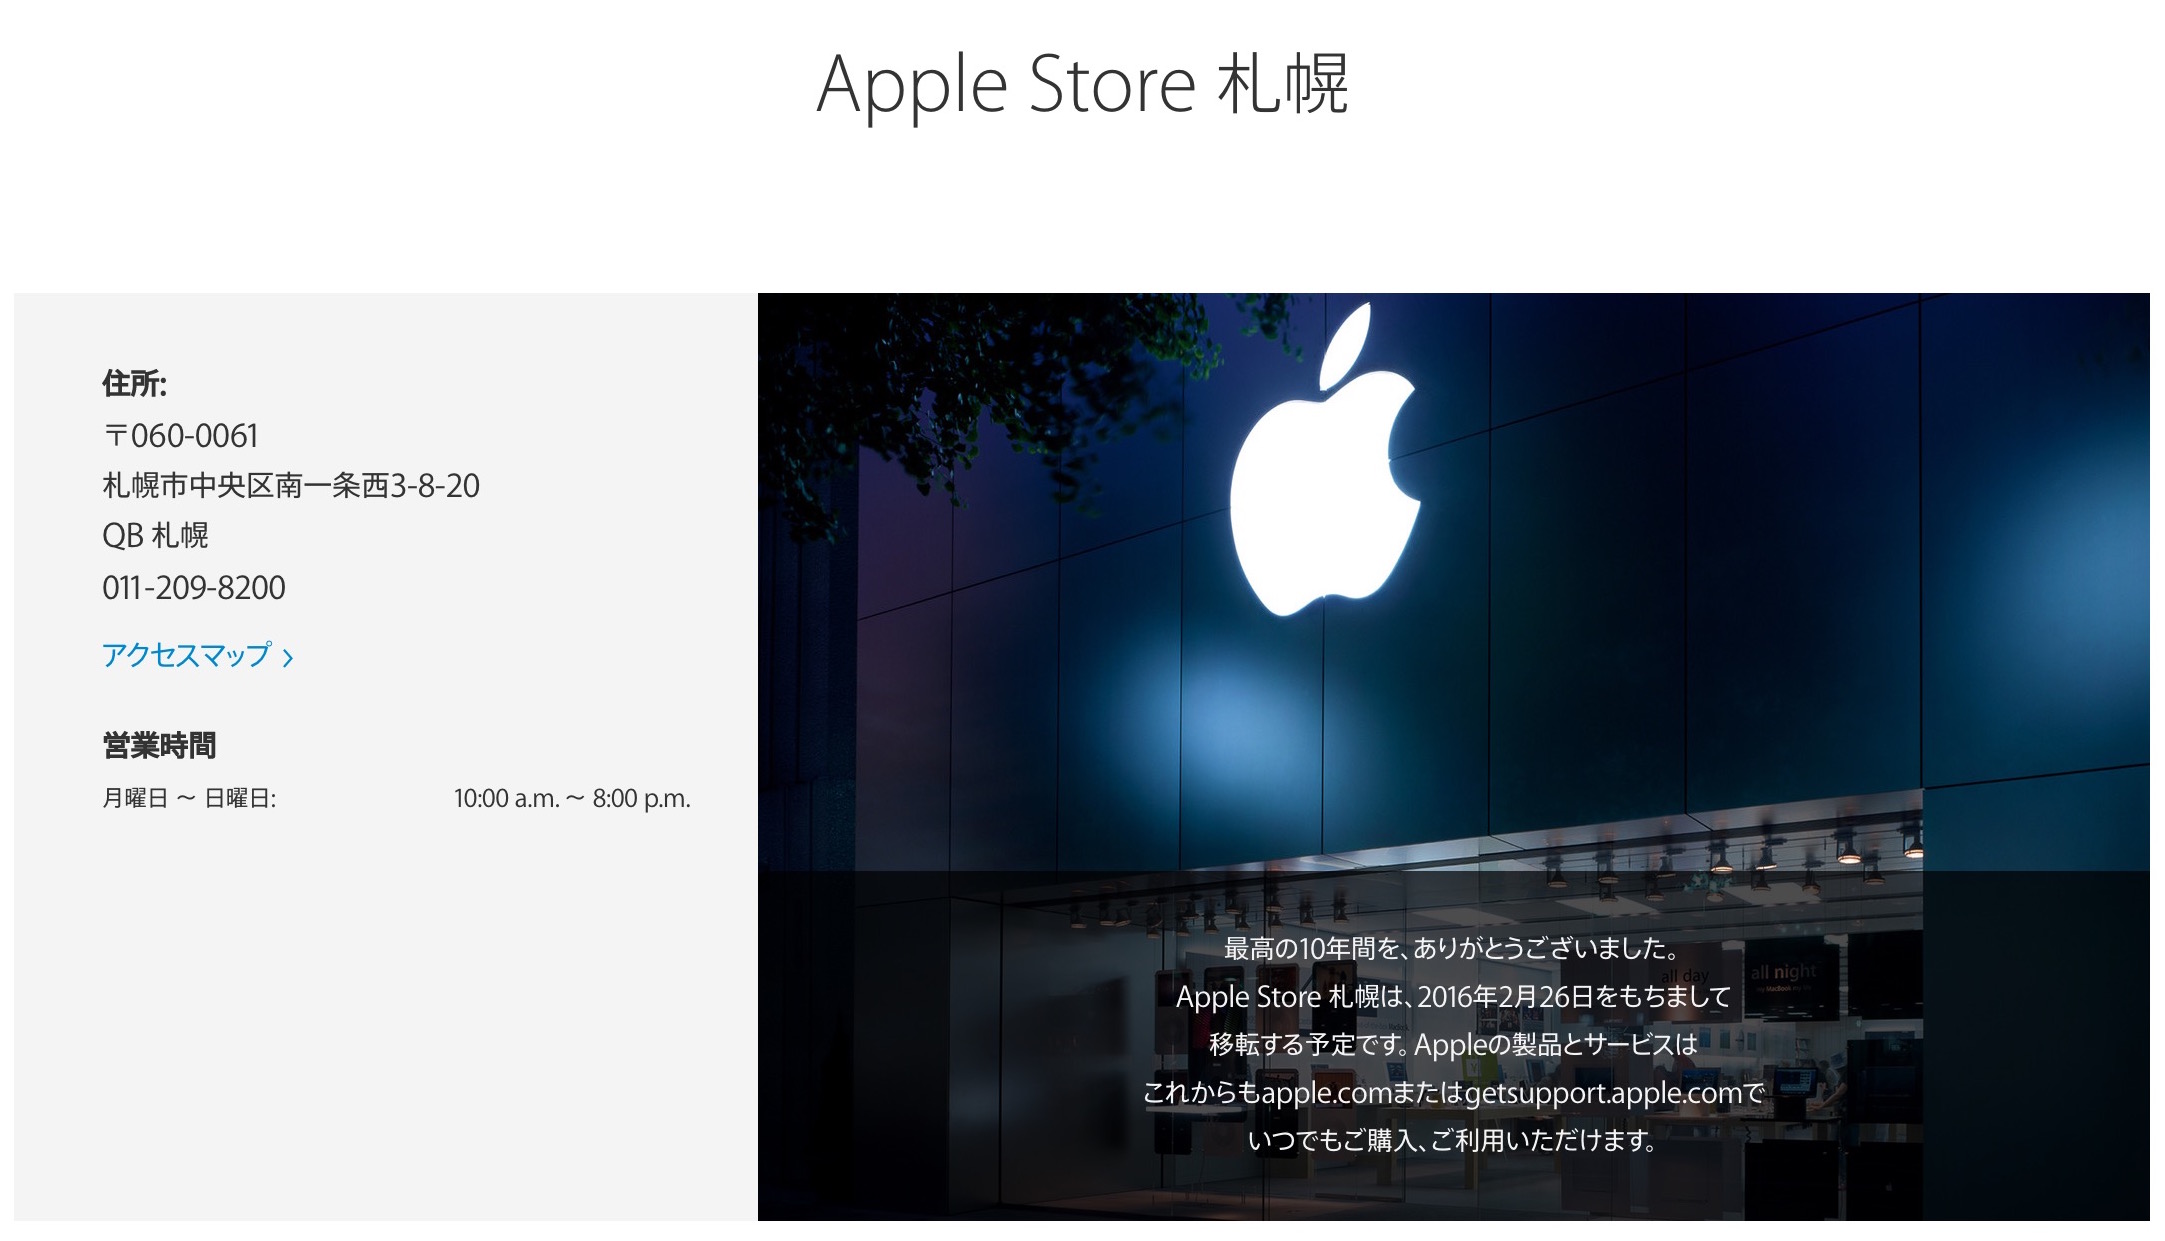 Apple Store札幌が「閉店」、公式サイトの案内も移転から「閉店」に